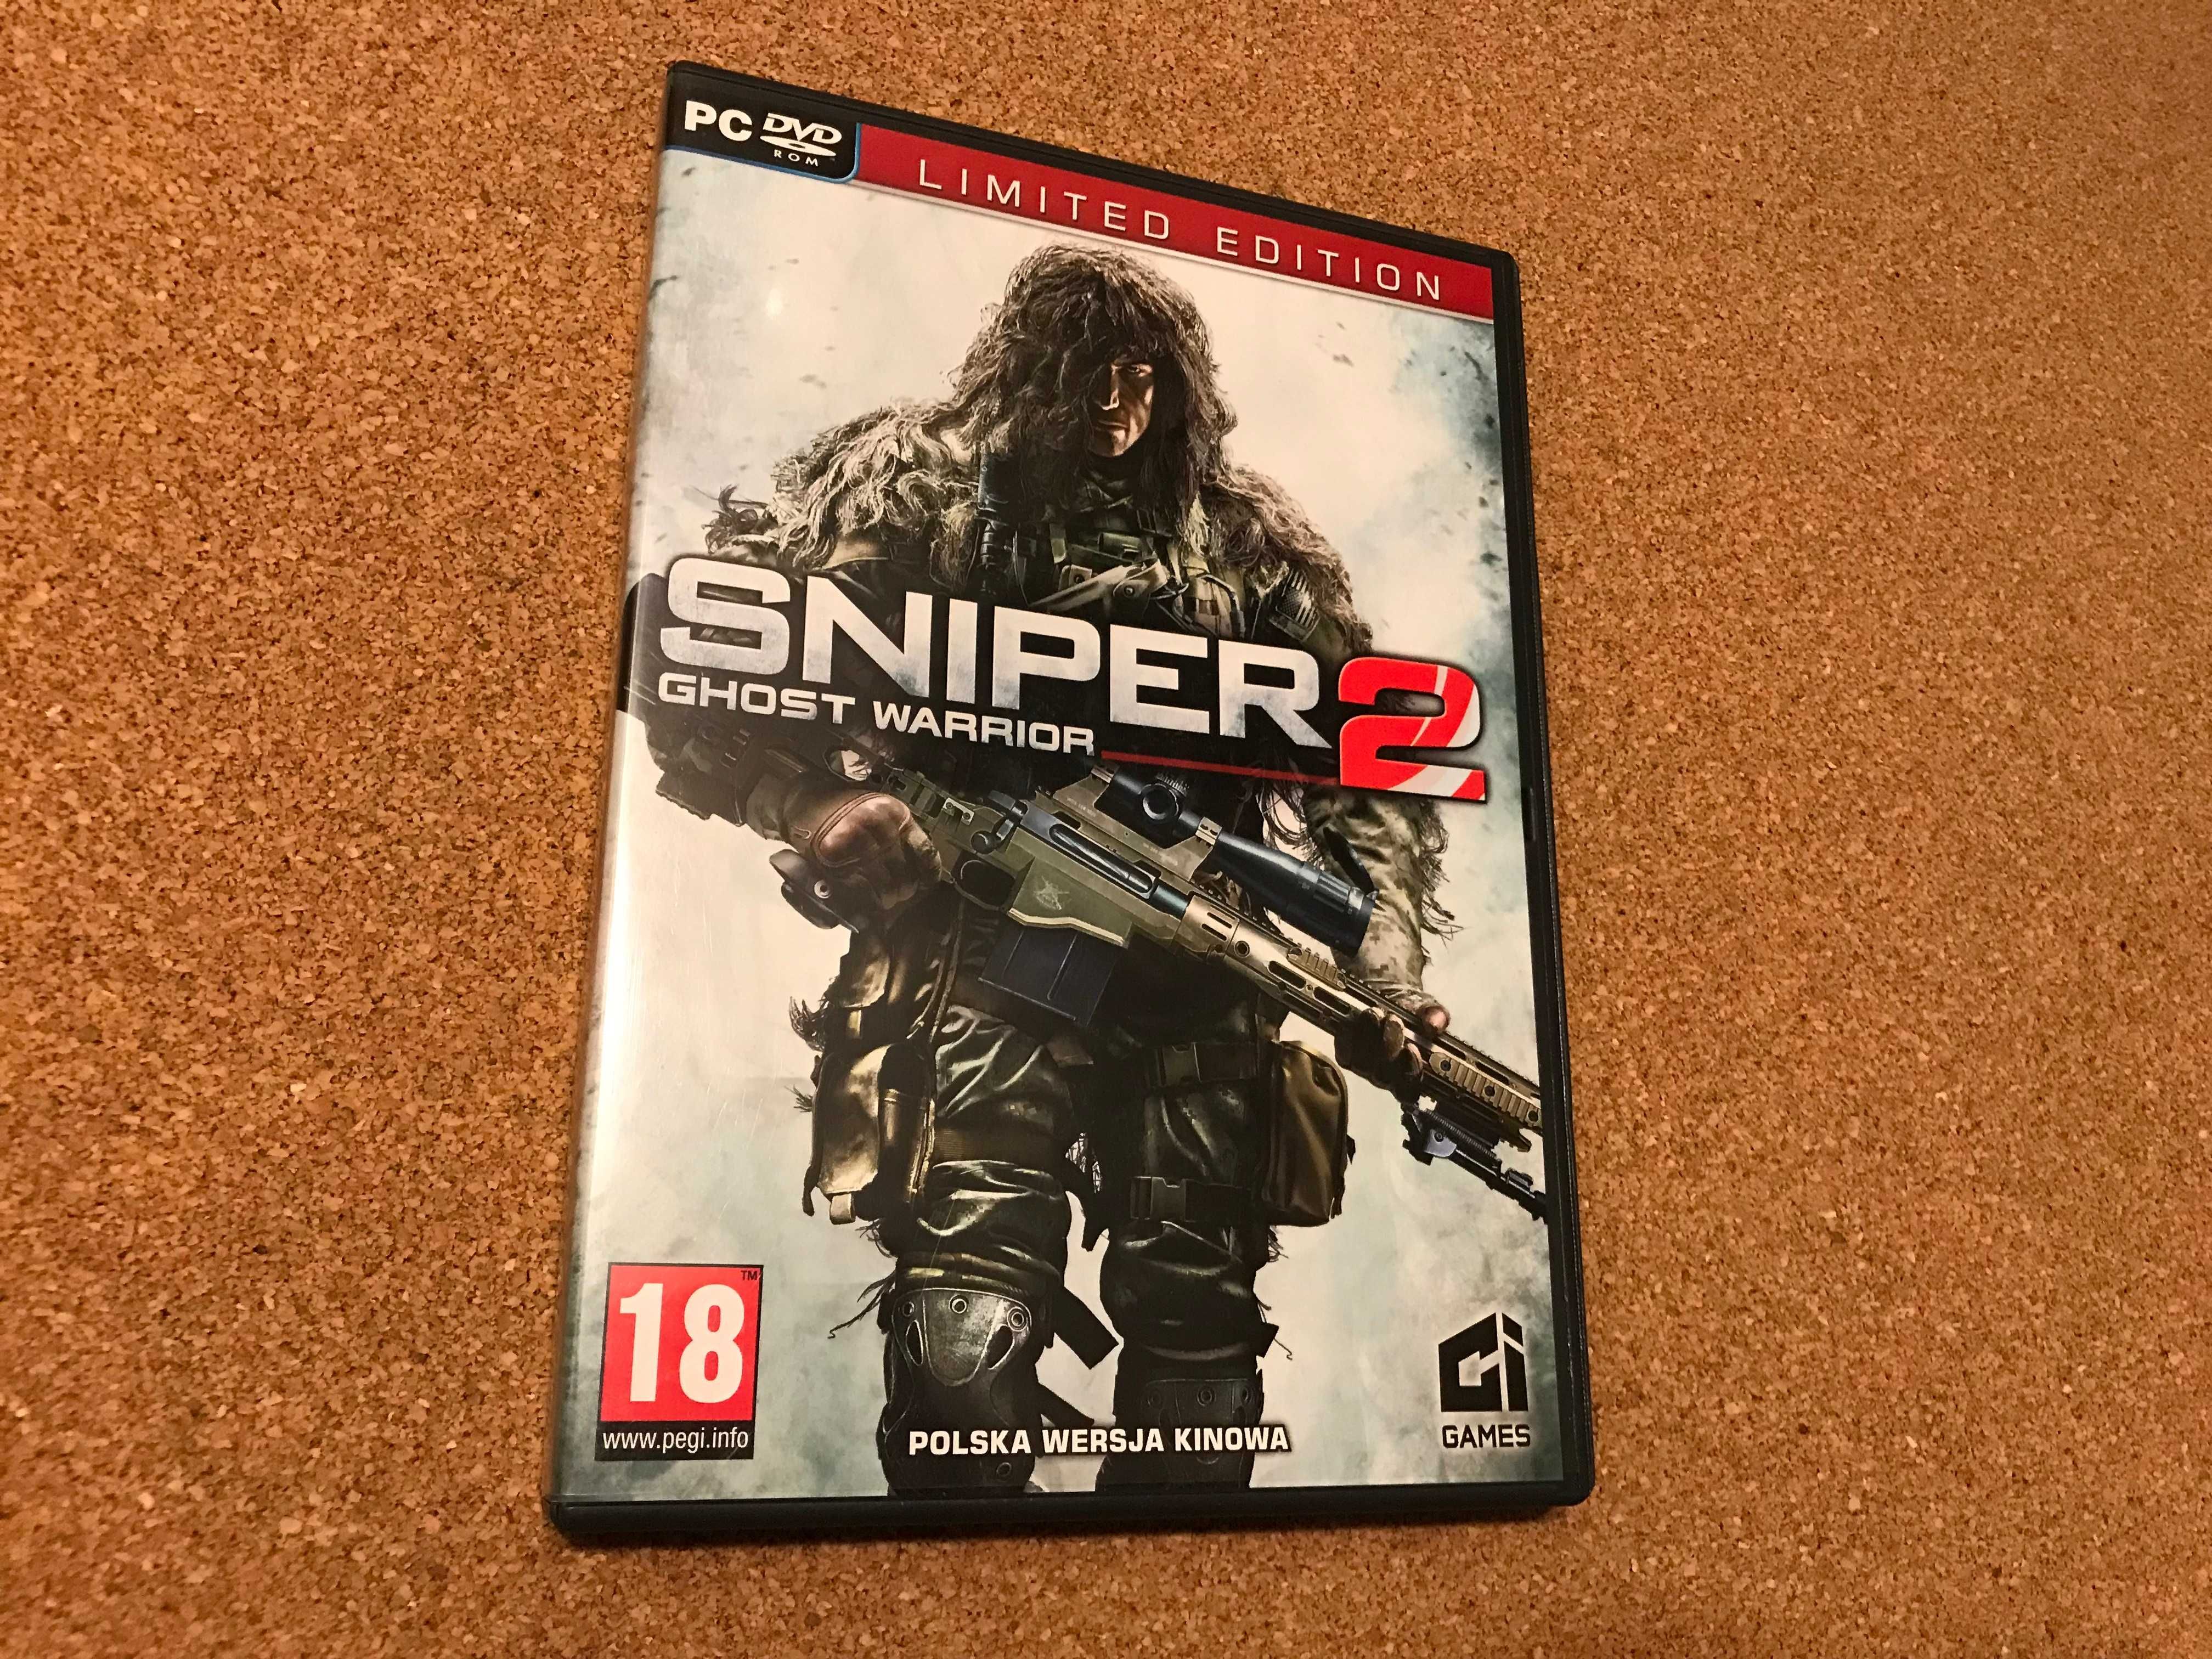 Sniper 2 Ghost Warrior [PC][DVD]